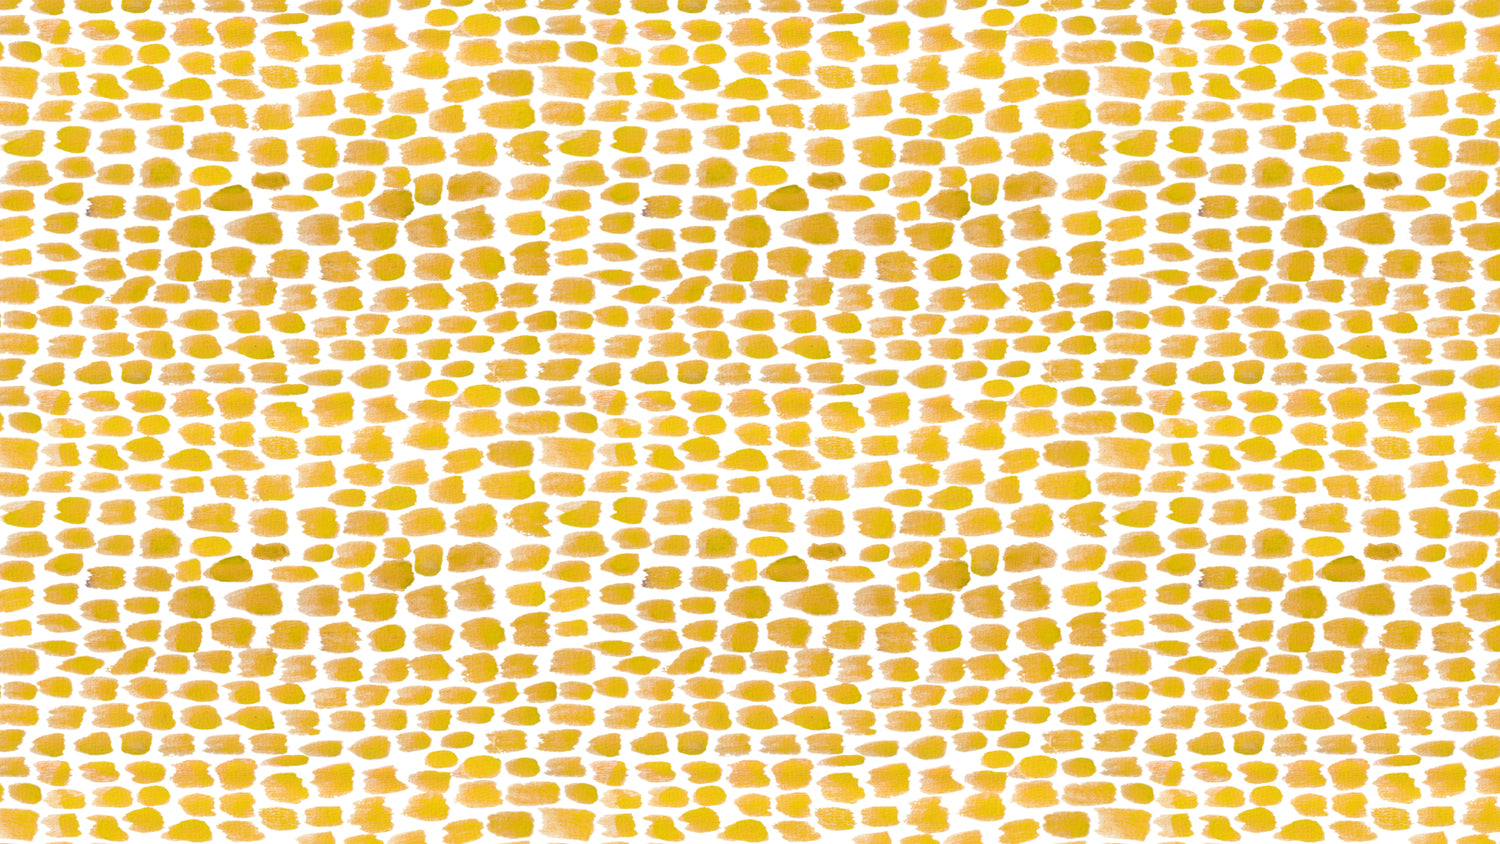 Alma Yellow